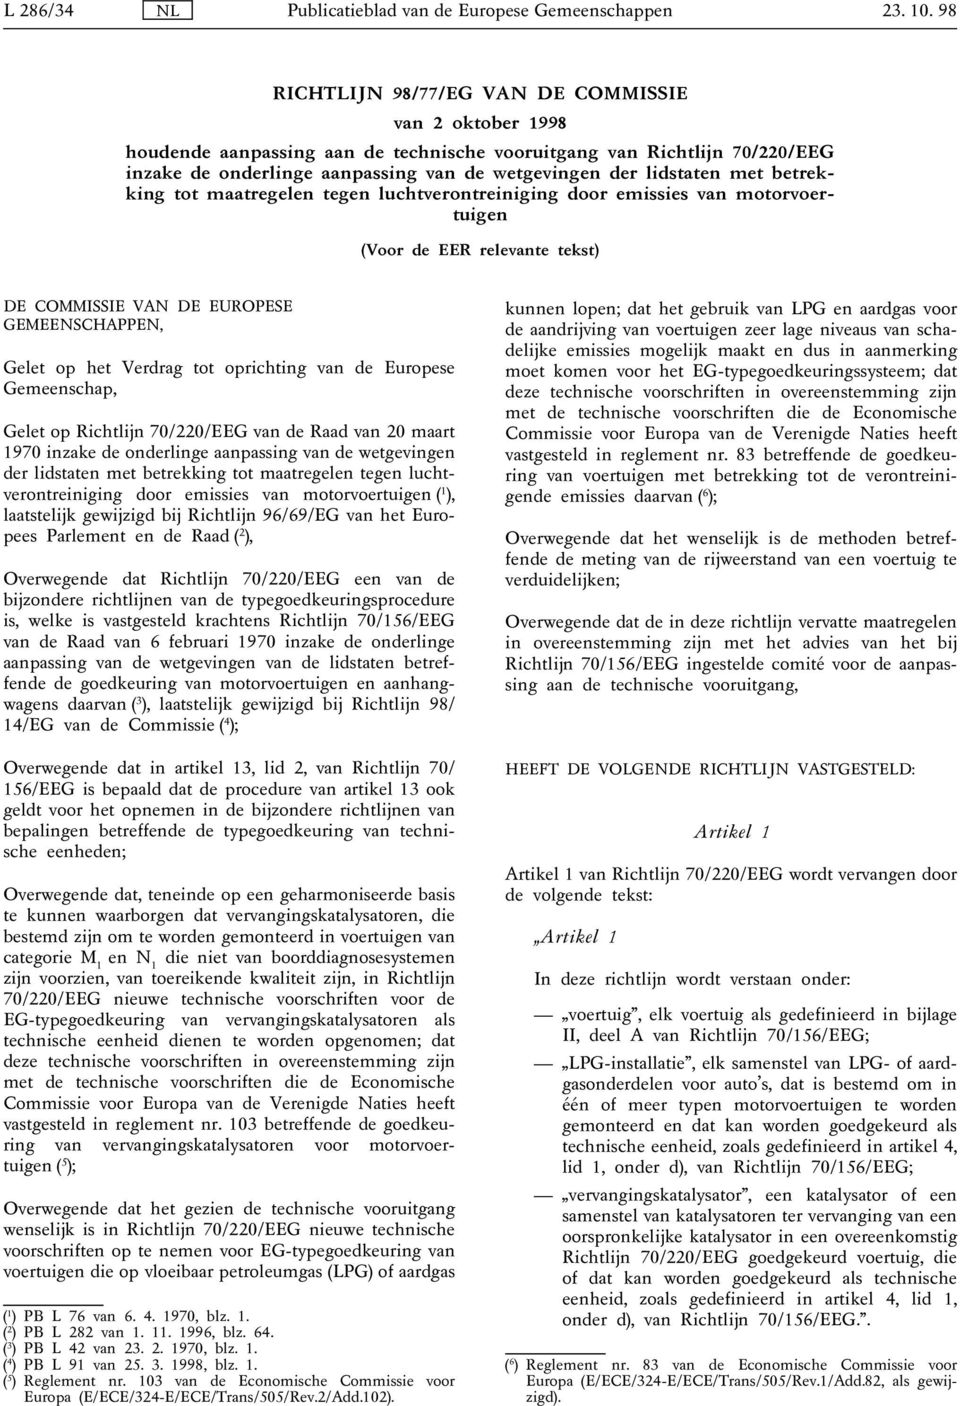 tot oprichting van de Europese Gemeenschap, Gelet op Richtlĳn 70/220/EEG van de Raad van 20 maart 1970 inzake de onderlinge aanpassing van de wetgevingen der lidstaten met betrekking tot maatregelen